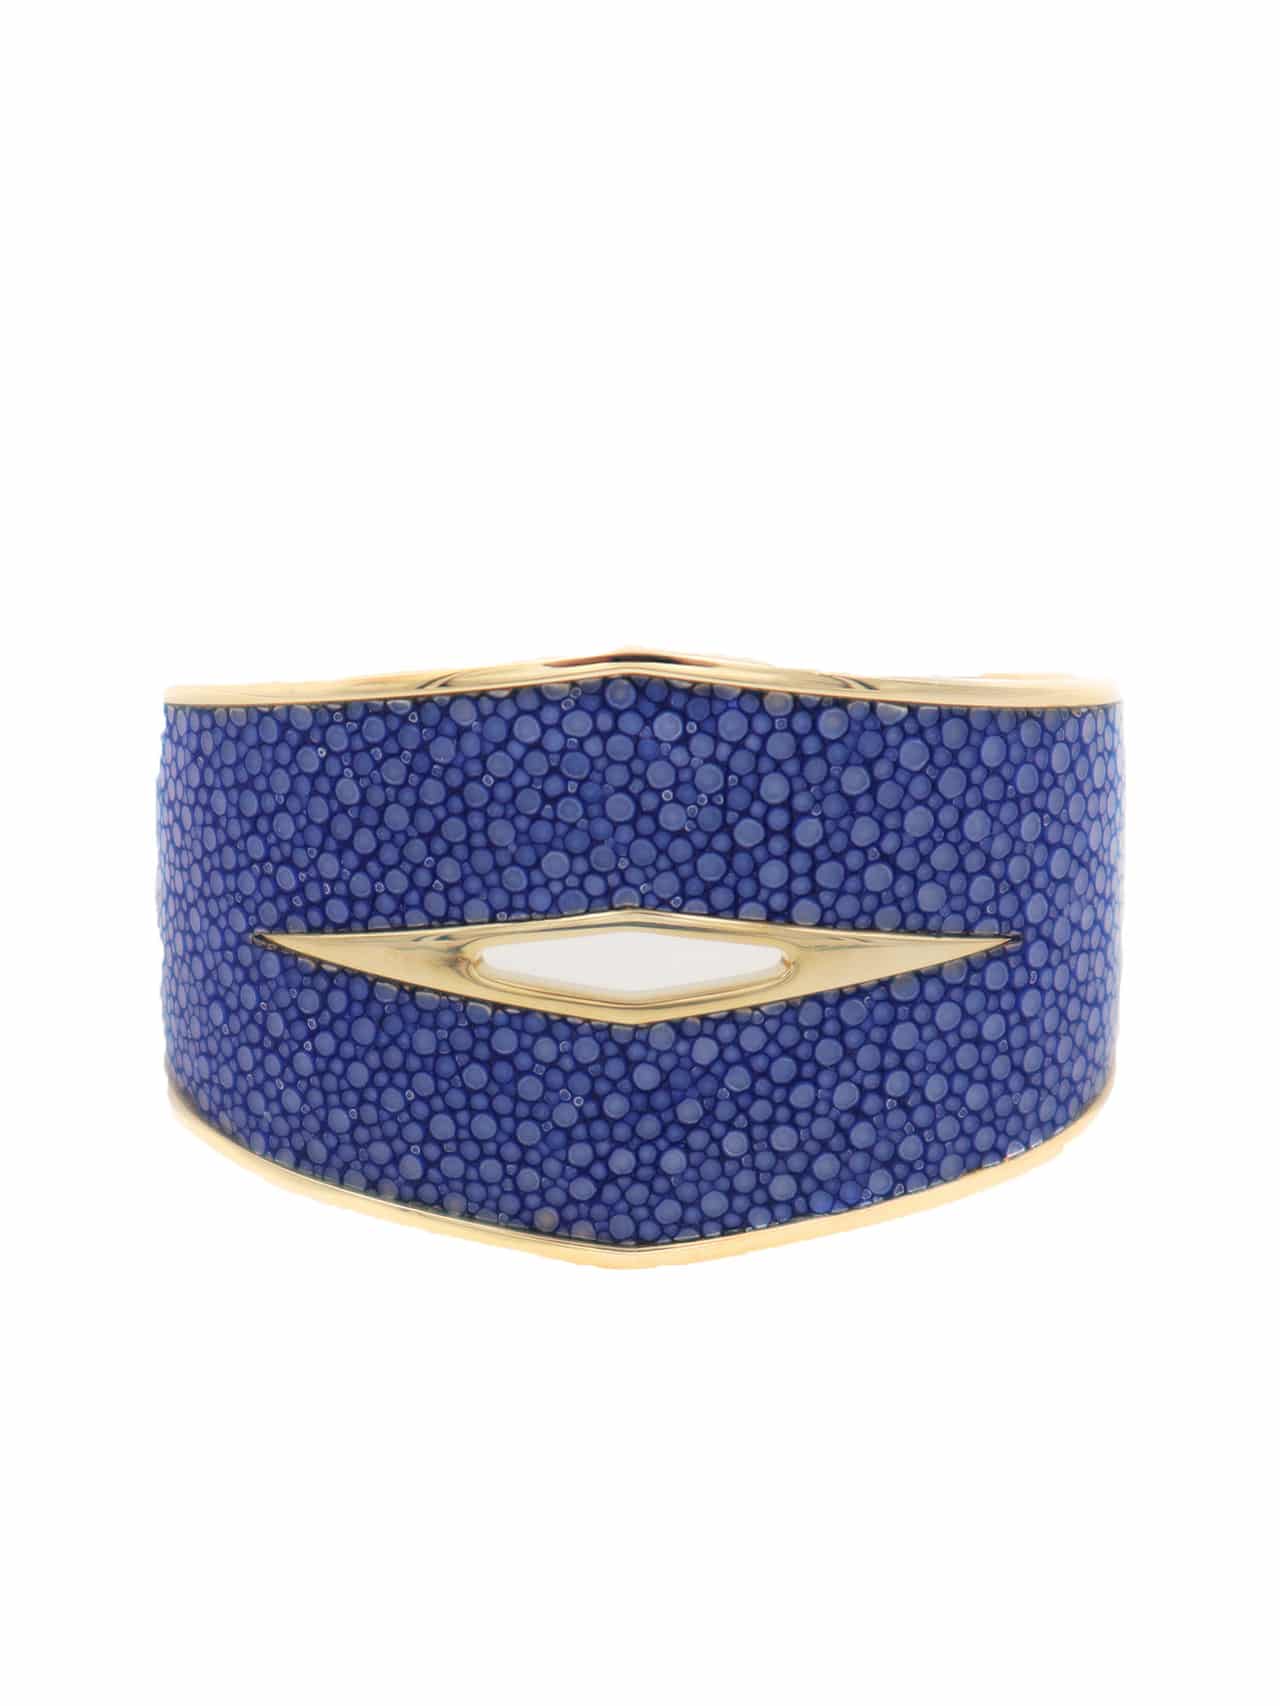 Venus bracelet blue stingray - Maison Jean Rousseau